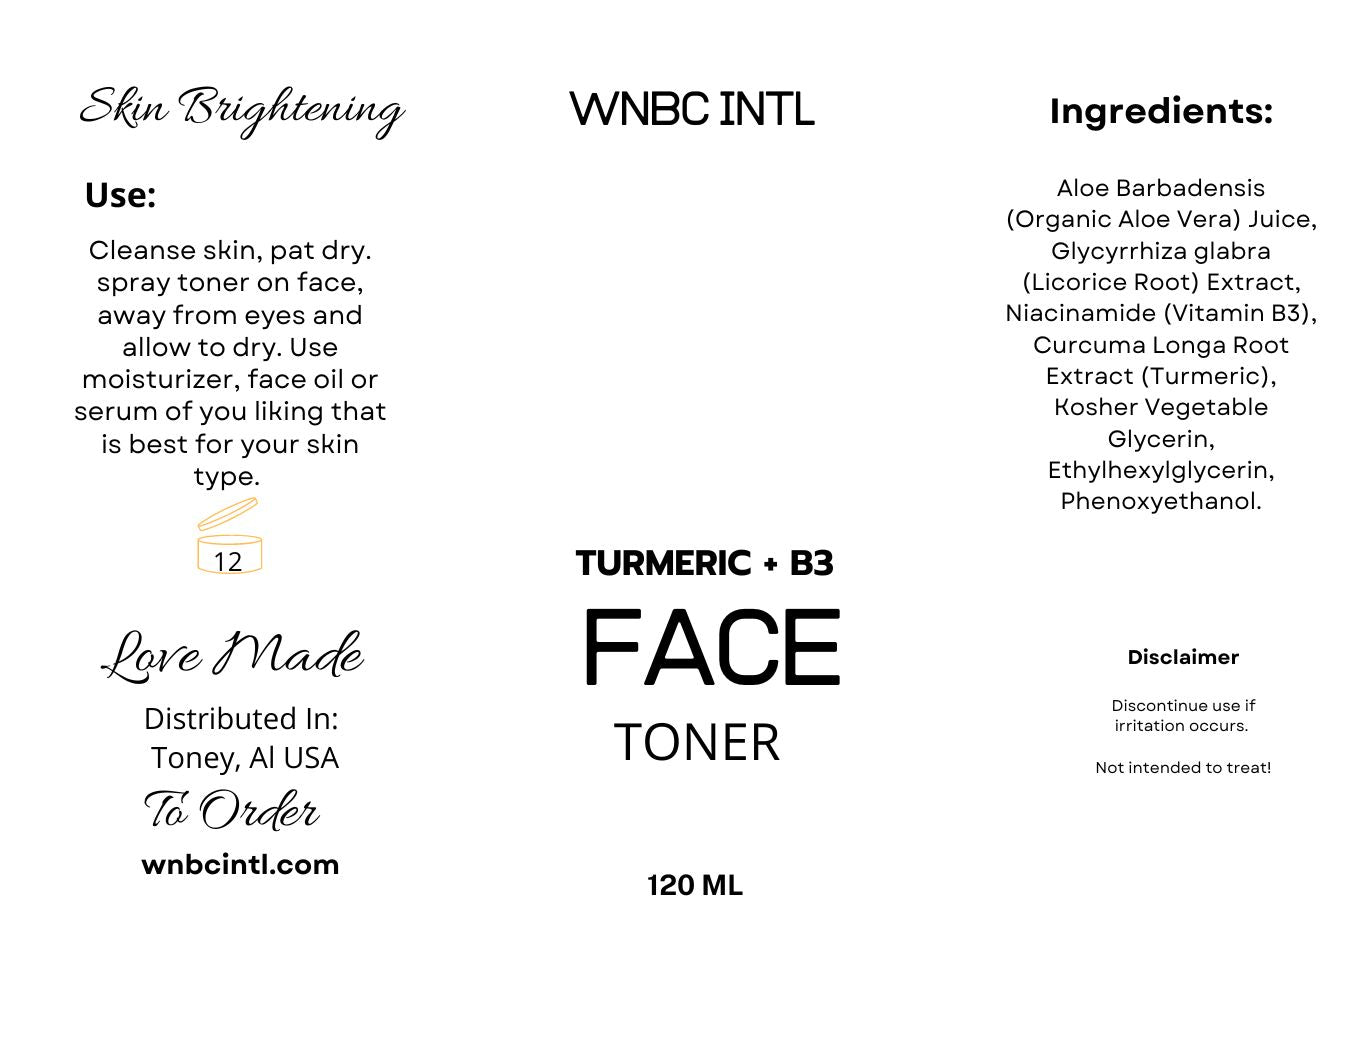 Turmeric + B3 Face Toner